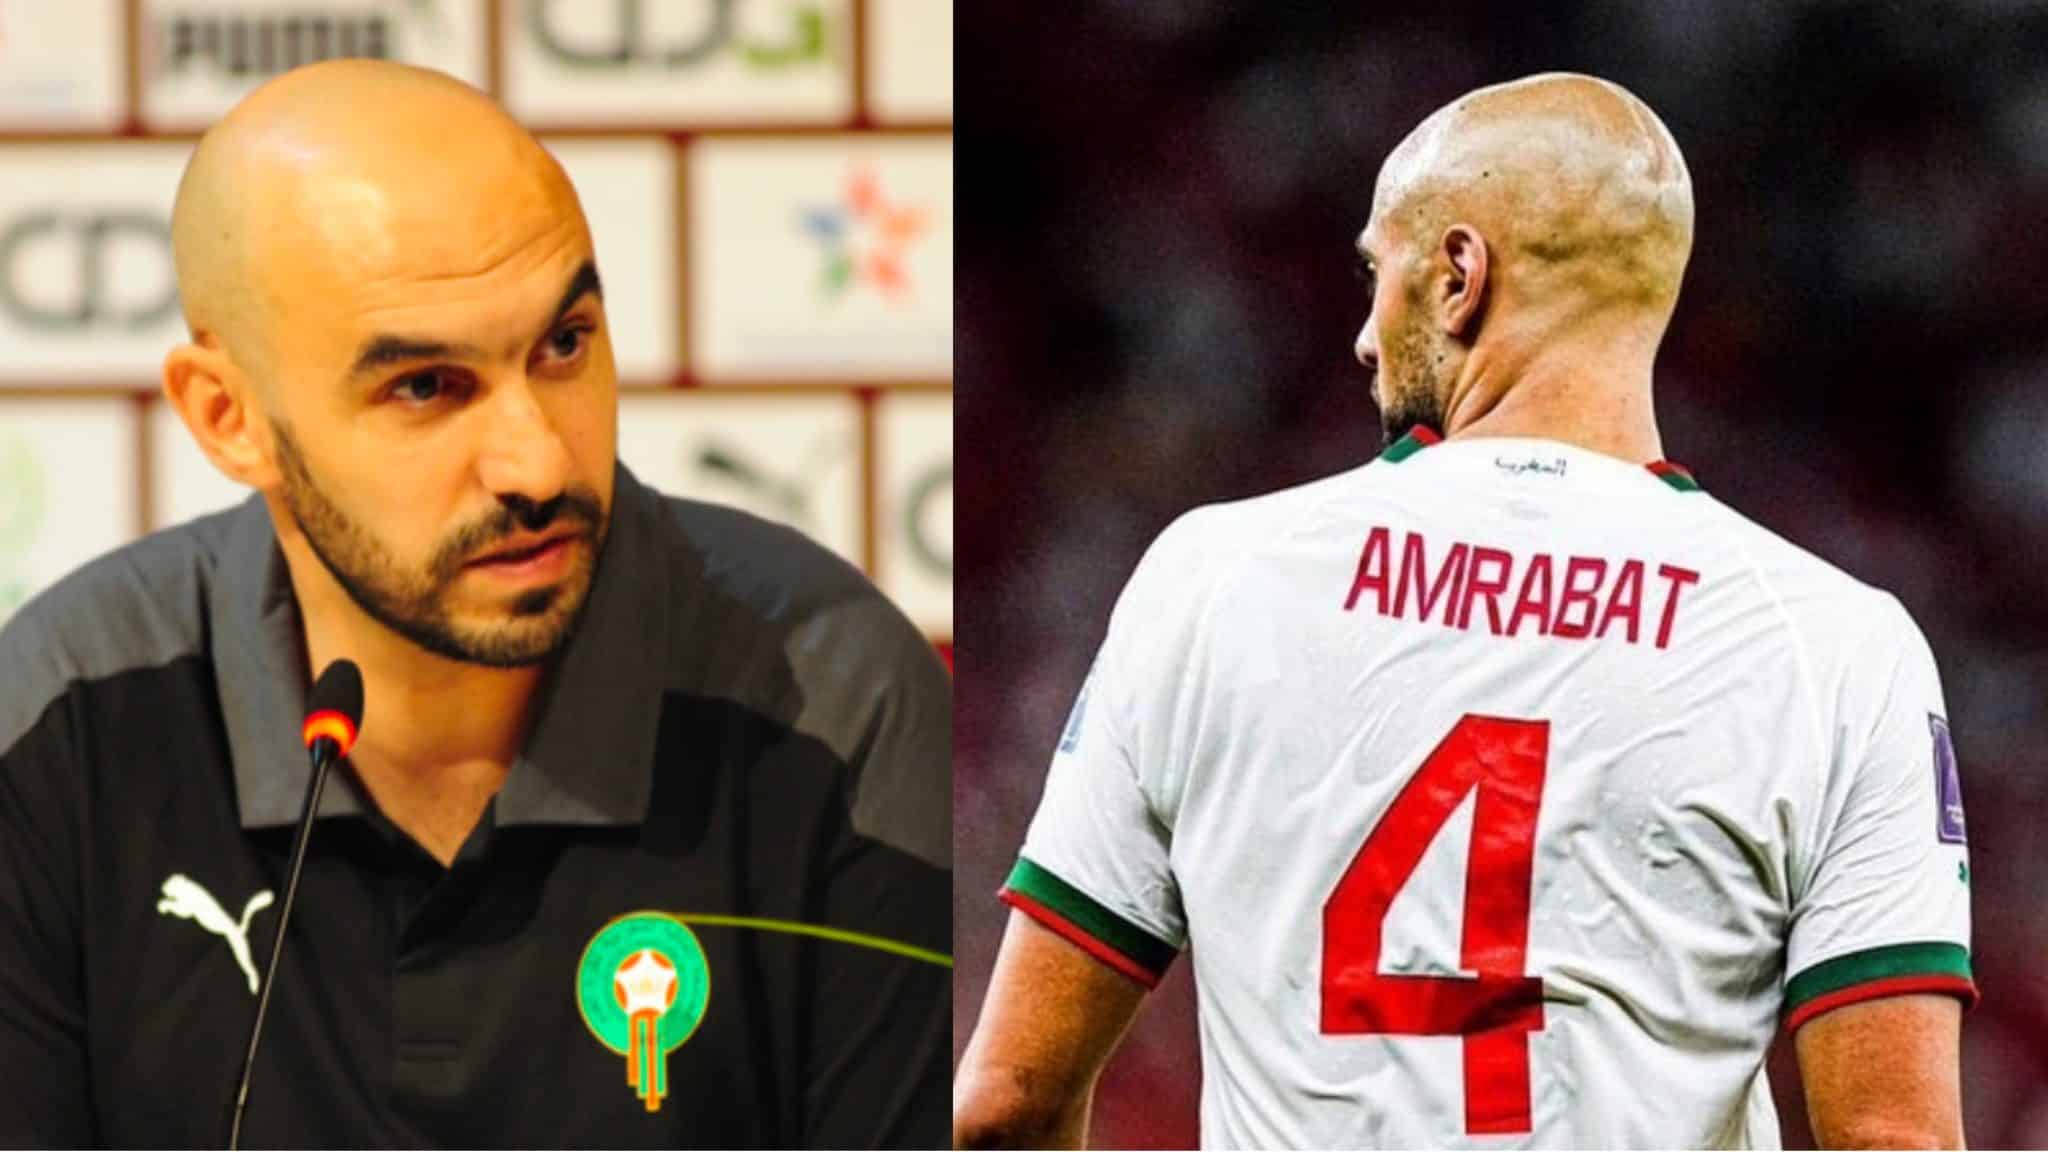 Le CT Maroc vous met en colère : « Je respecte la Fiorentina, mais Amrabat devrait jouer dans un top club »